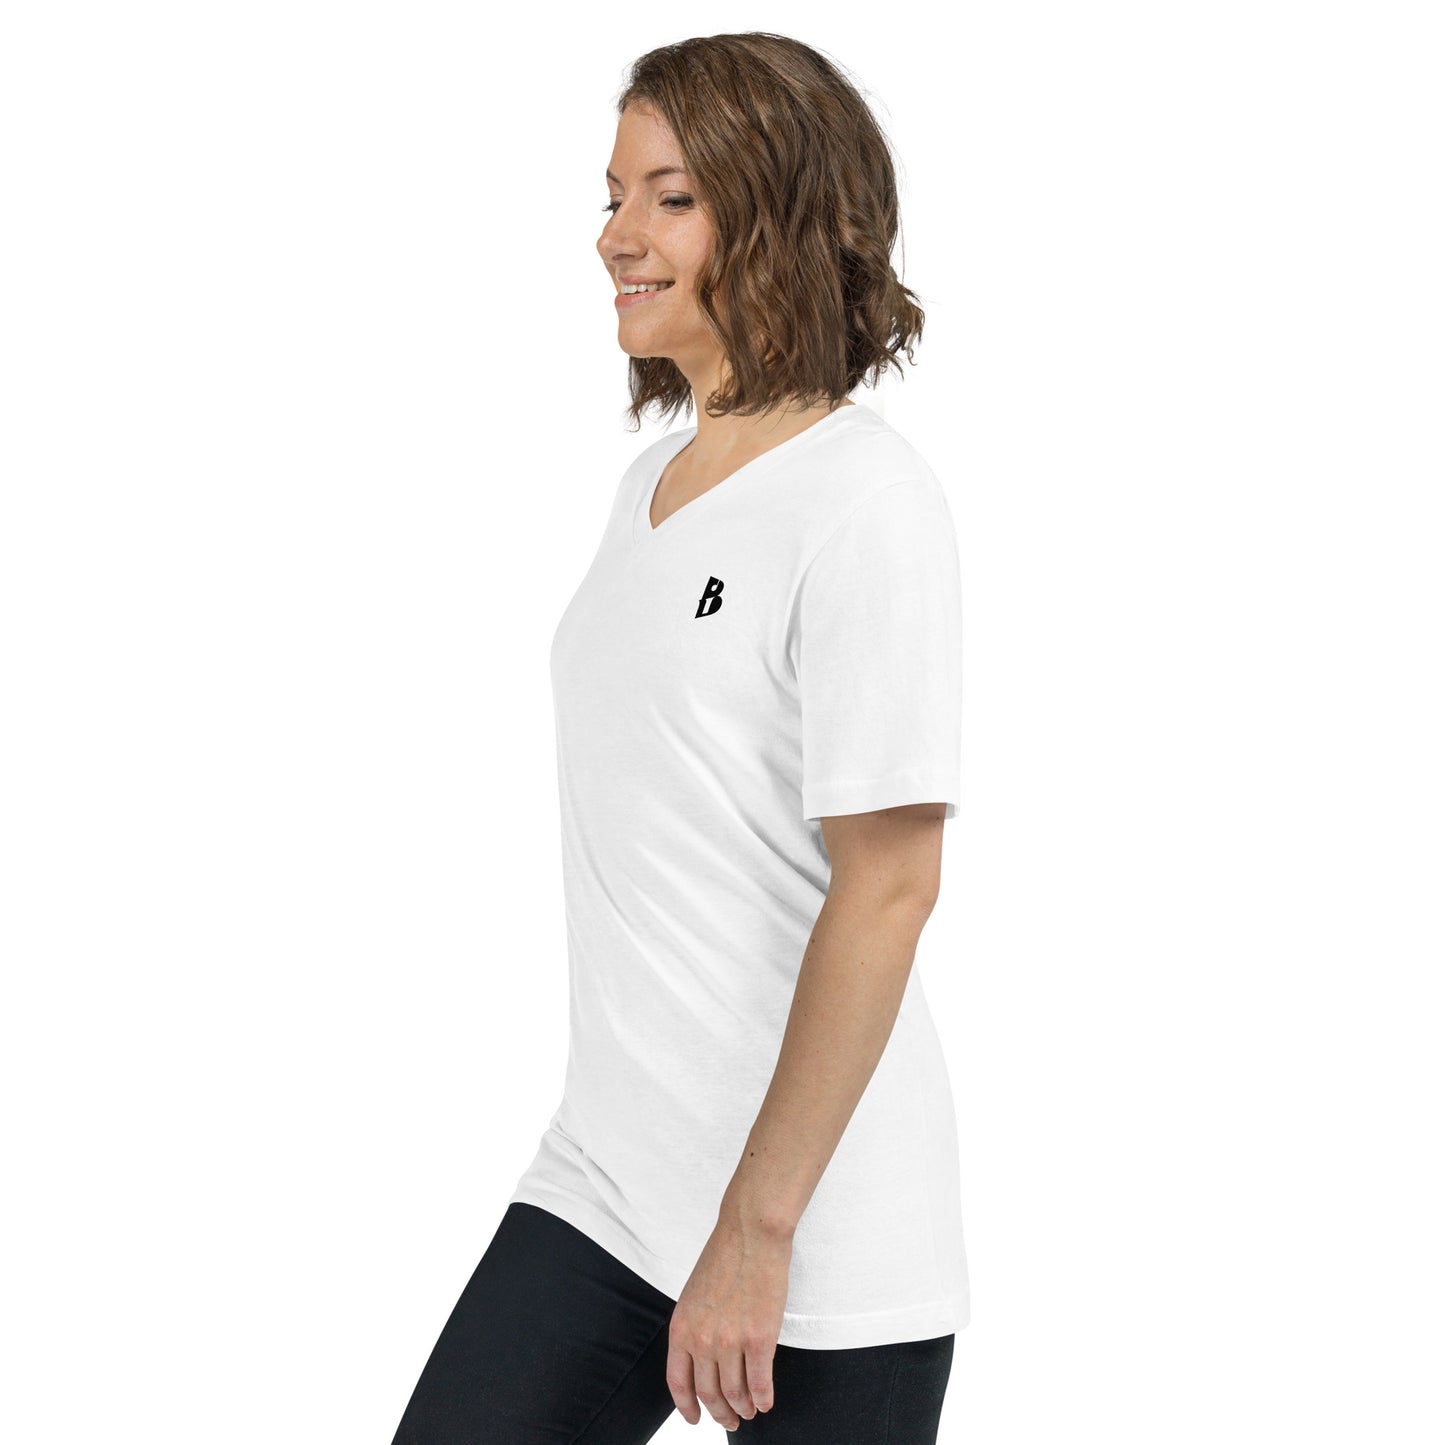 Unisex IzyBeats Logo Short Sleeve V-Neck T-Shirt